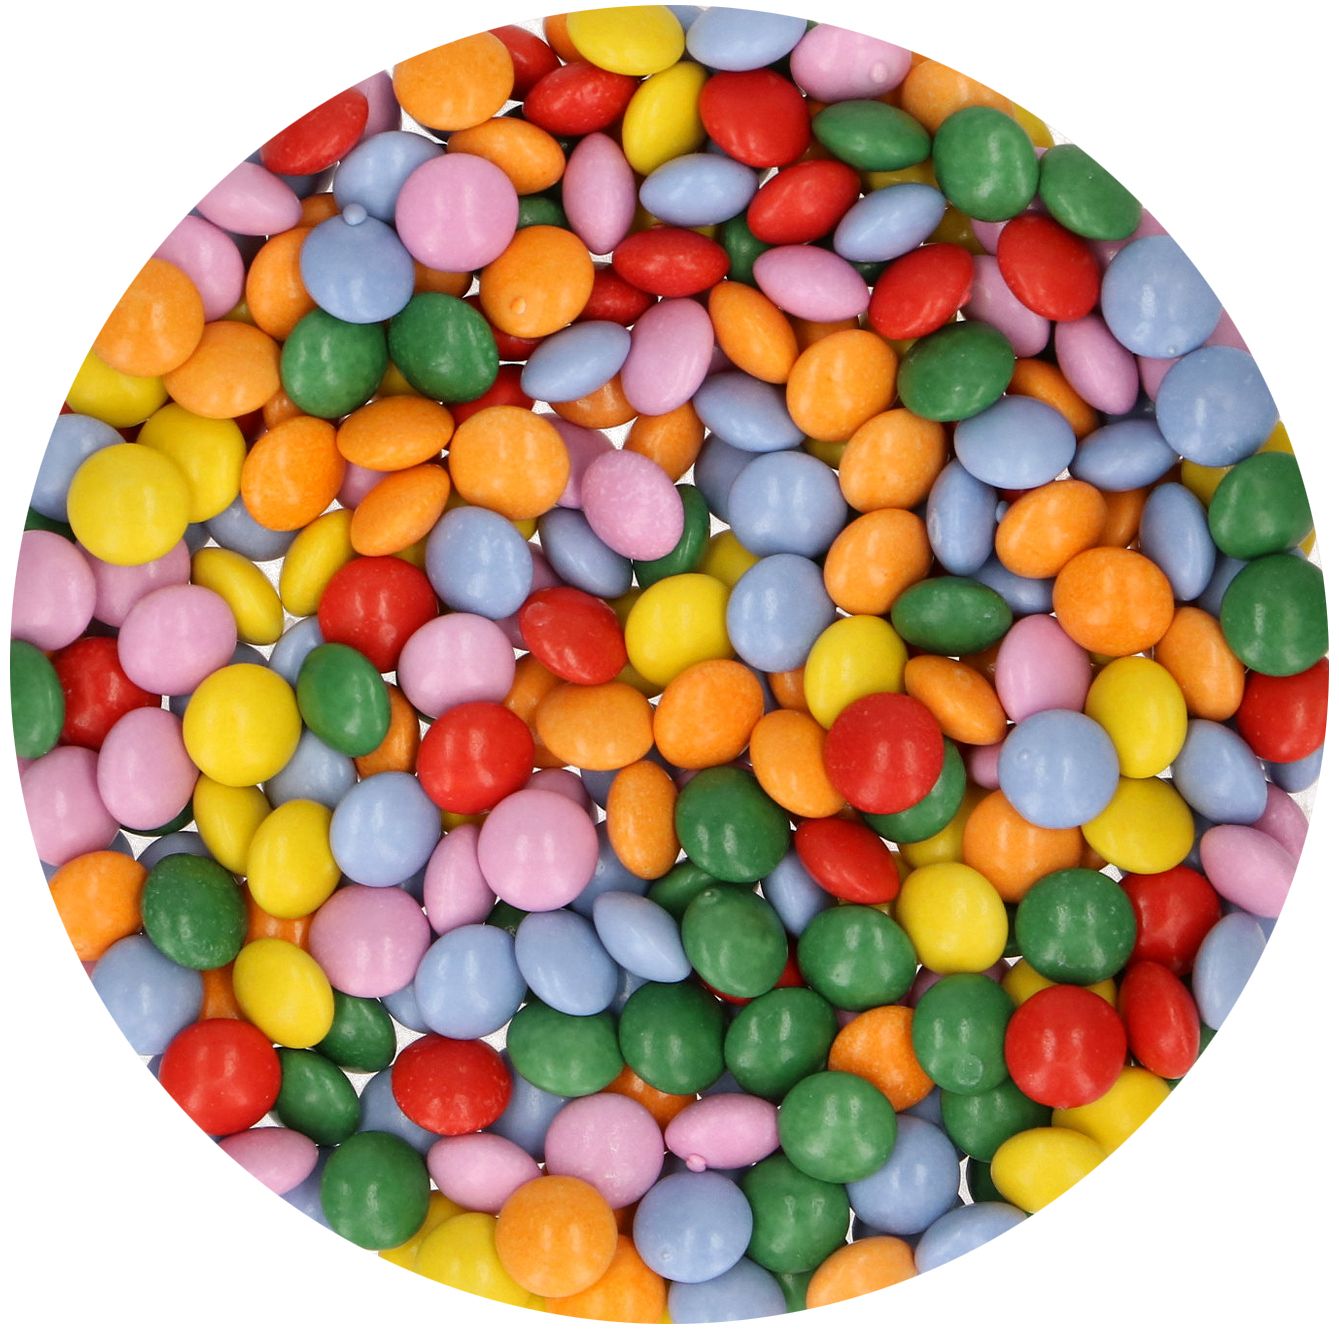 Candy Choco Confetti 80 g